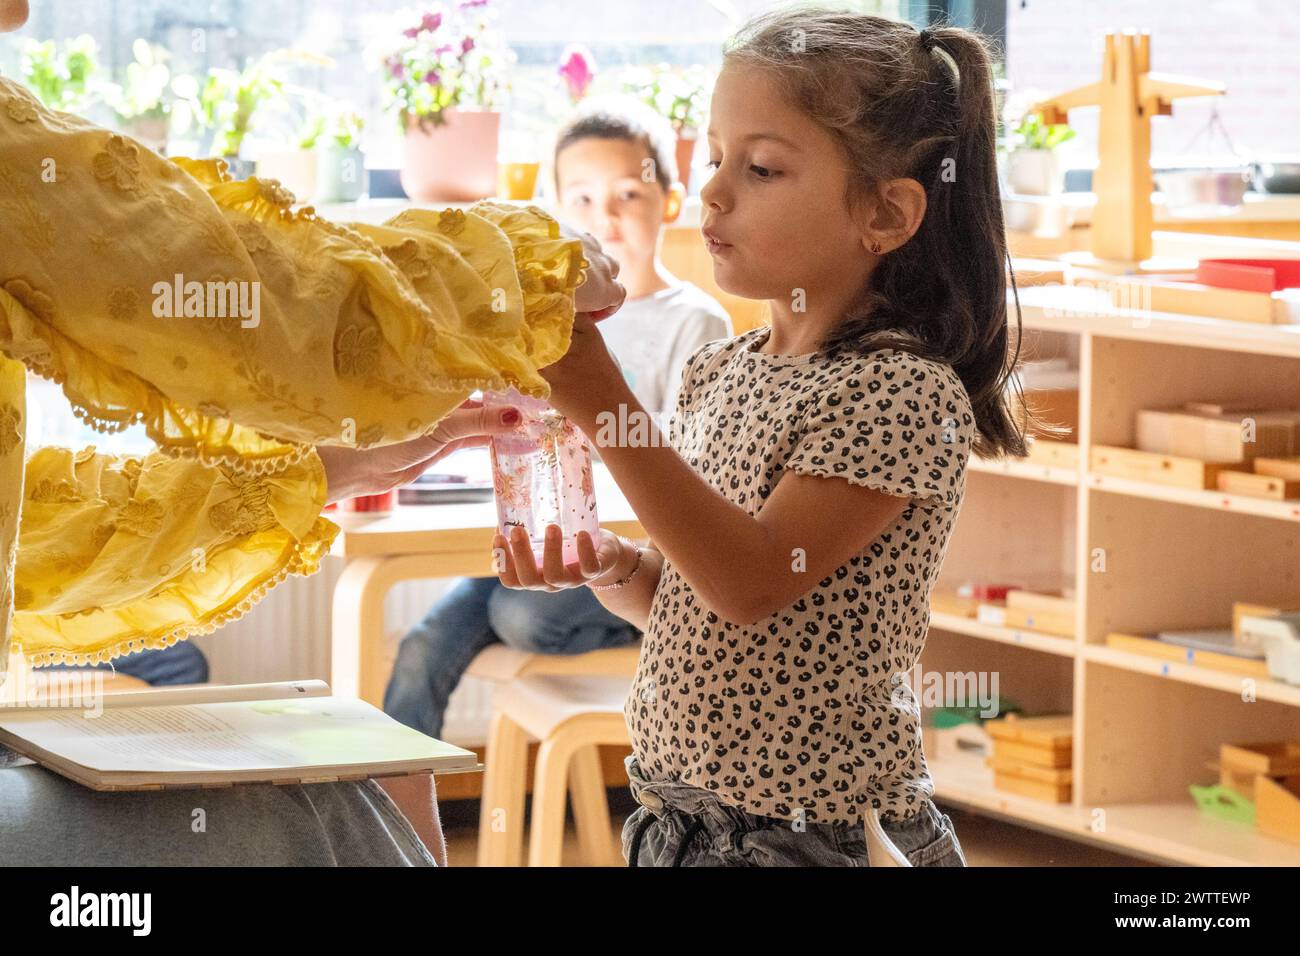 Ein junges Mädchen untersucht sorgfältig ein gelbes Kleid, das ihr in einem sonnendurchfluteten Raum übergeben wurde Stockfoto